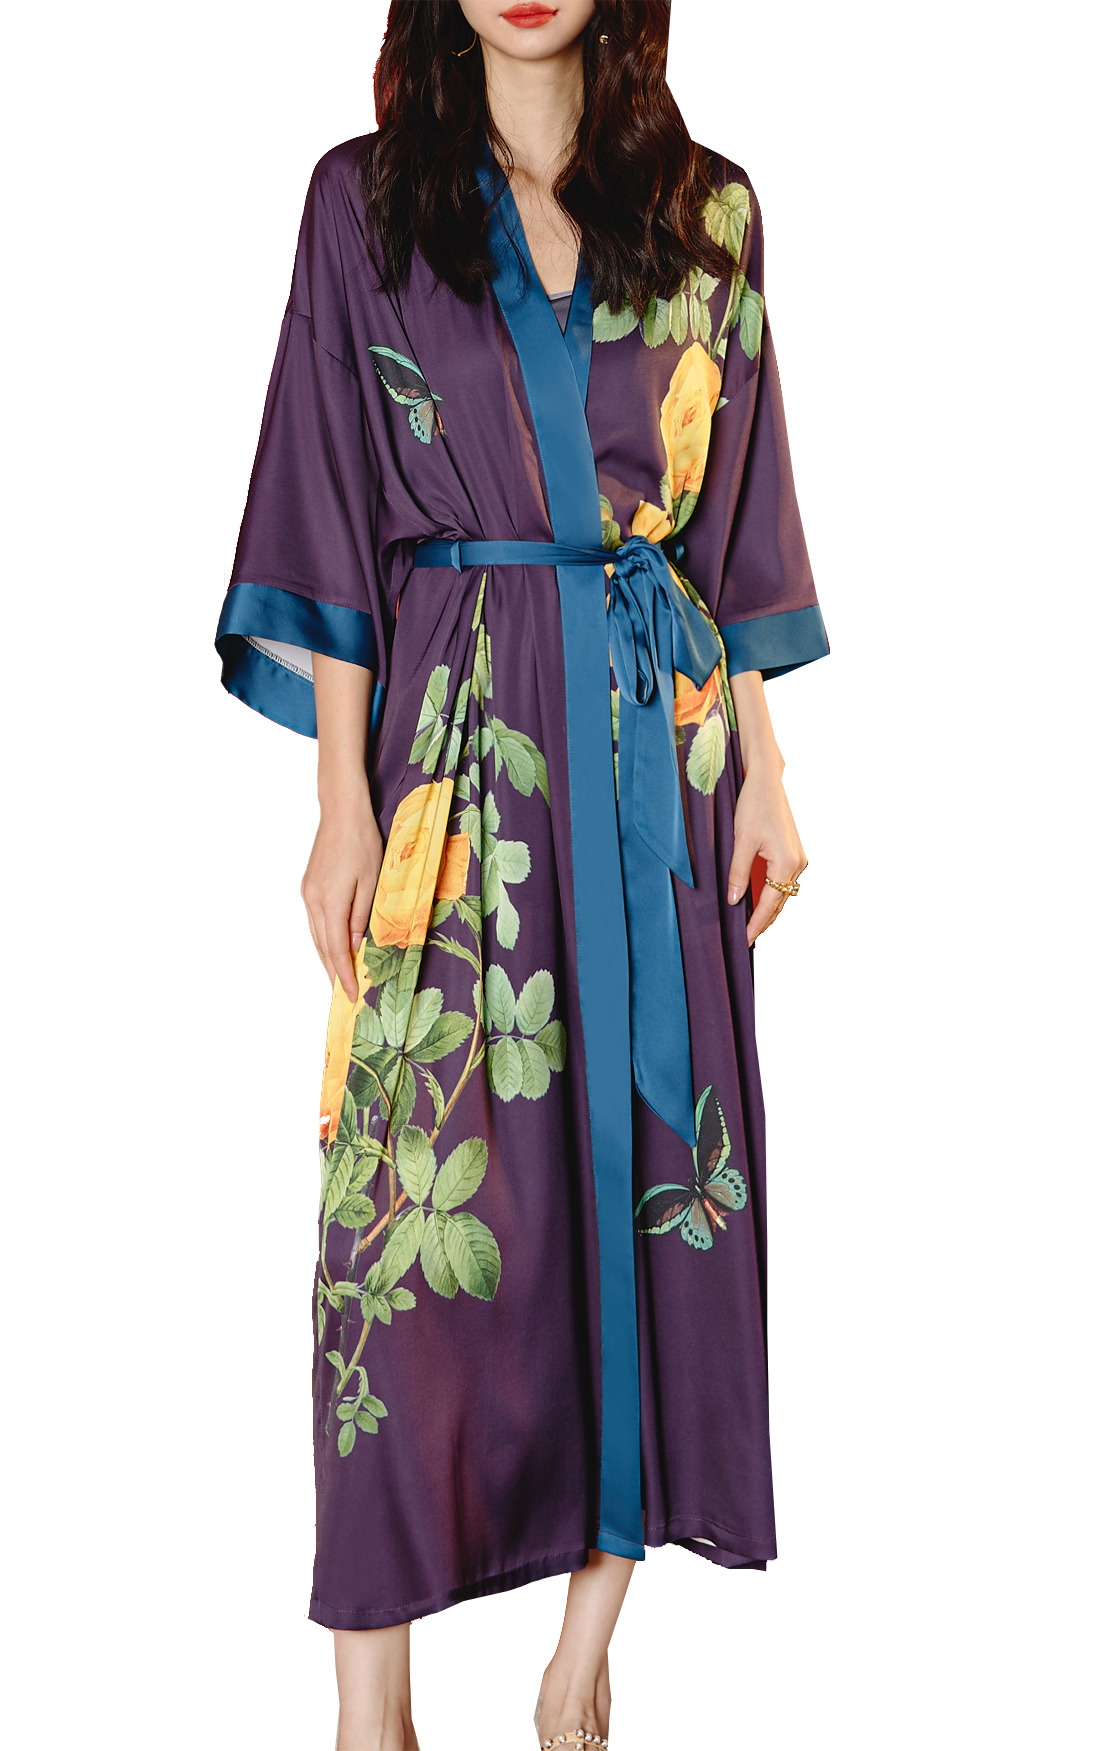 Vrouwen satijnen slaapkleding kimono kleedjurk elegante lange bruiloft bruidsmeisjes gewaad nachtdress zomer nachtwear v nek driekwart mouw riem loungewear pyjama